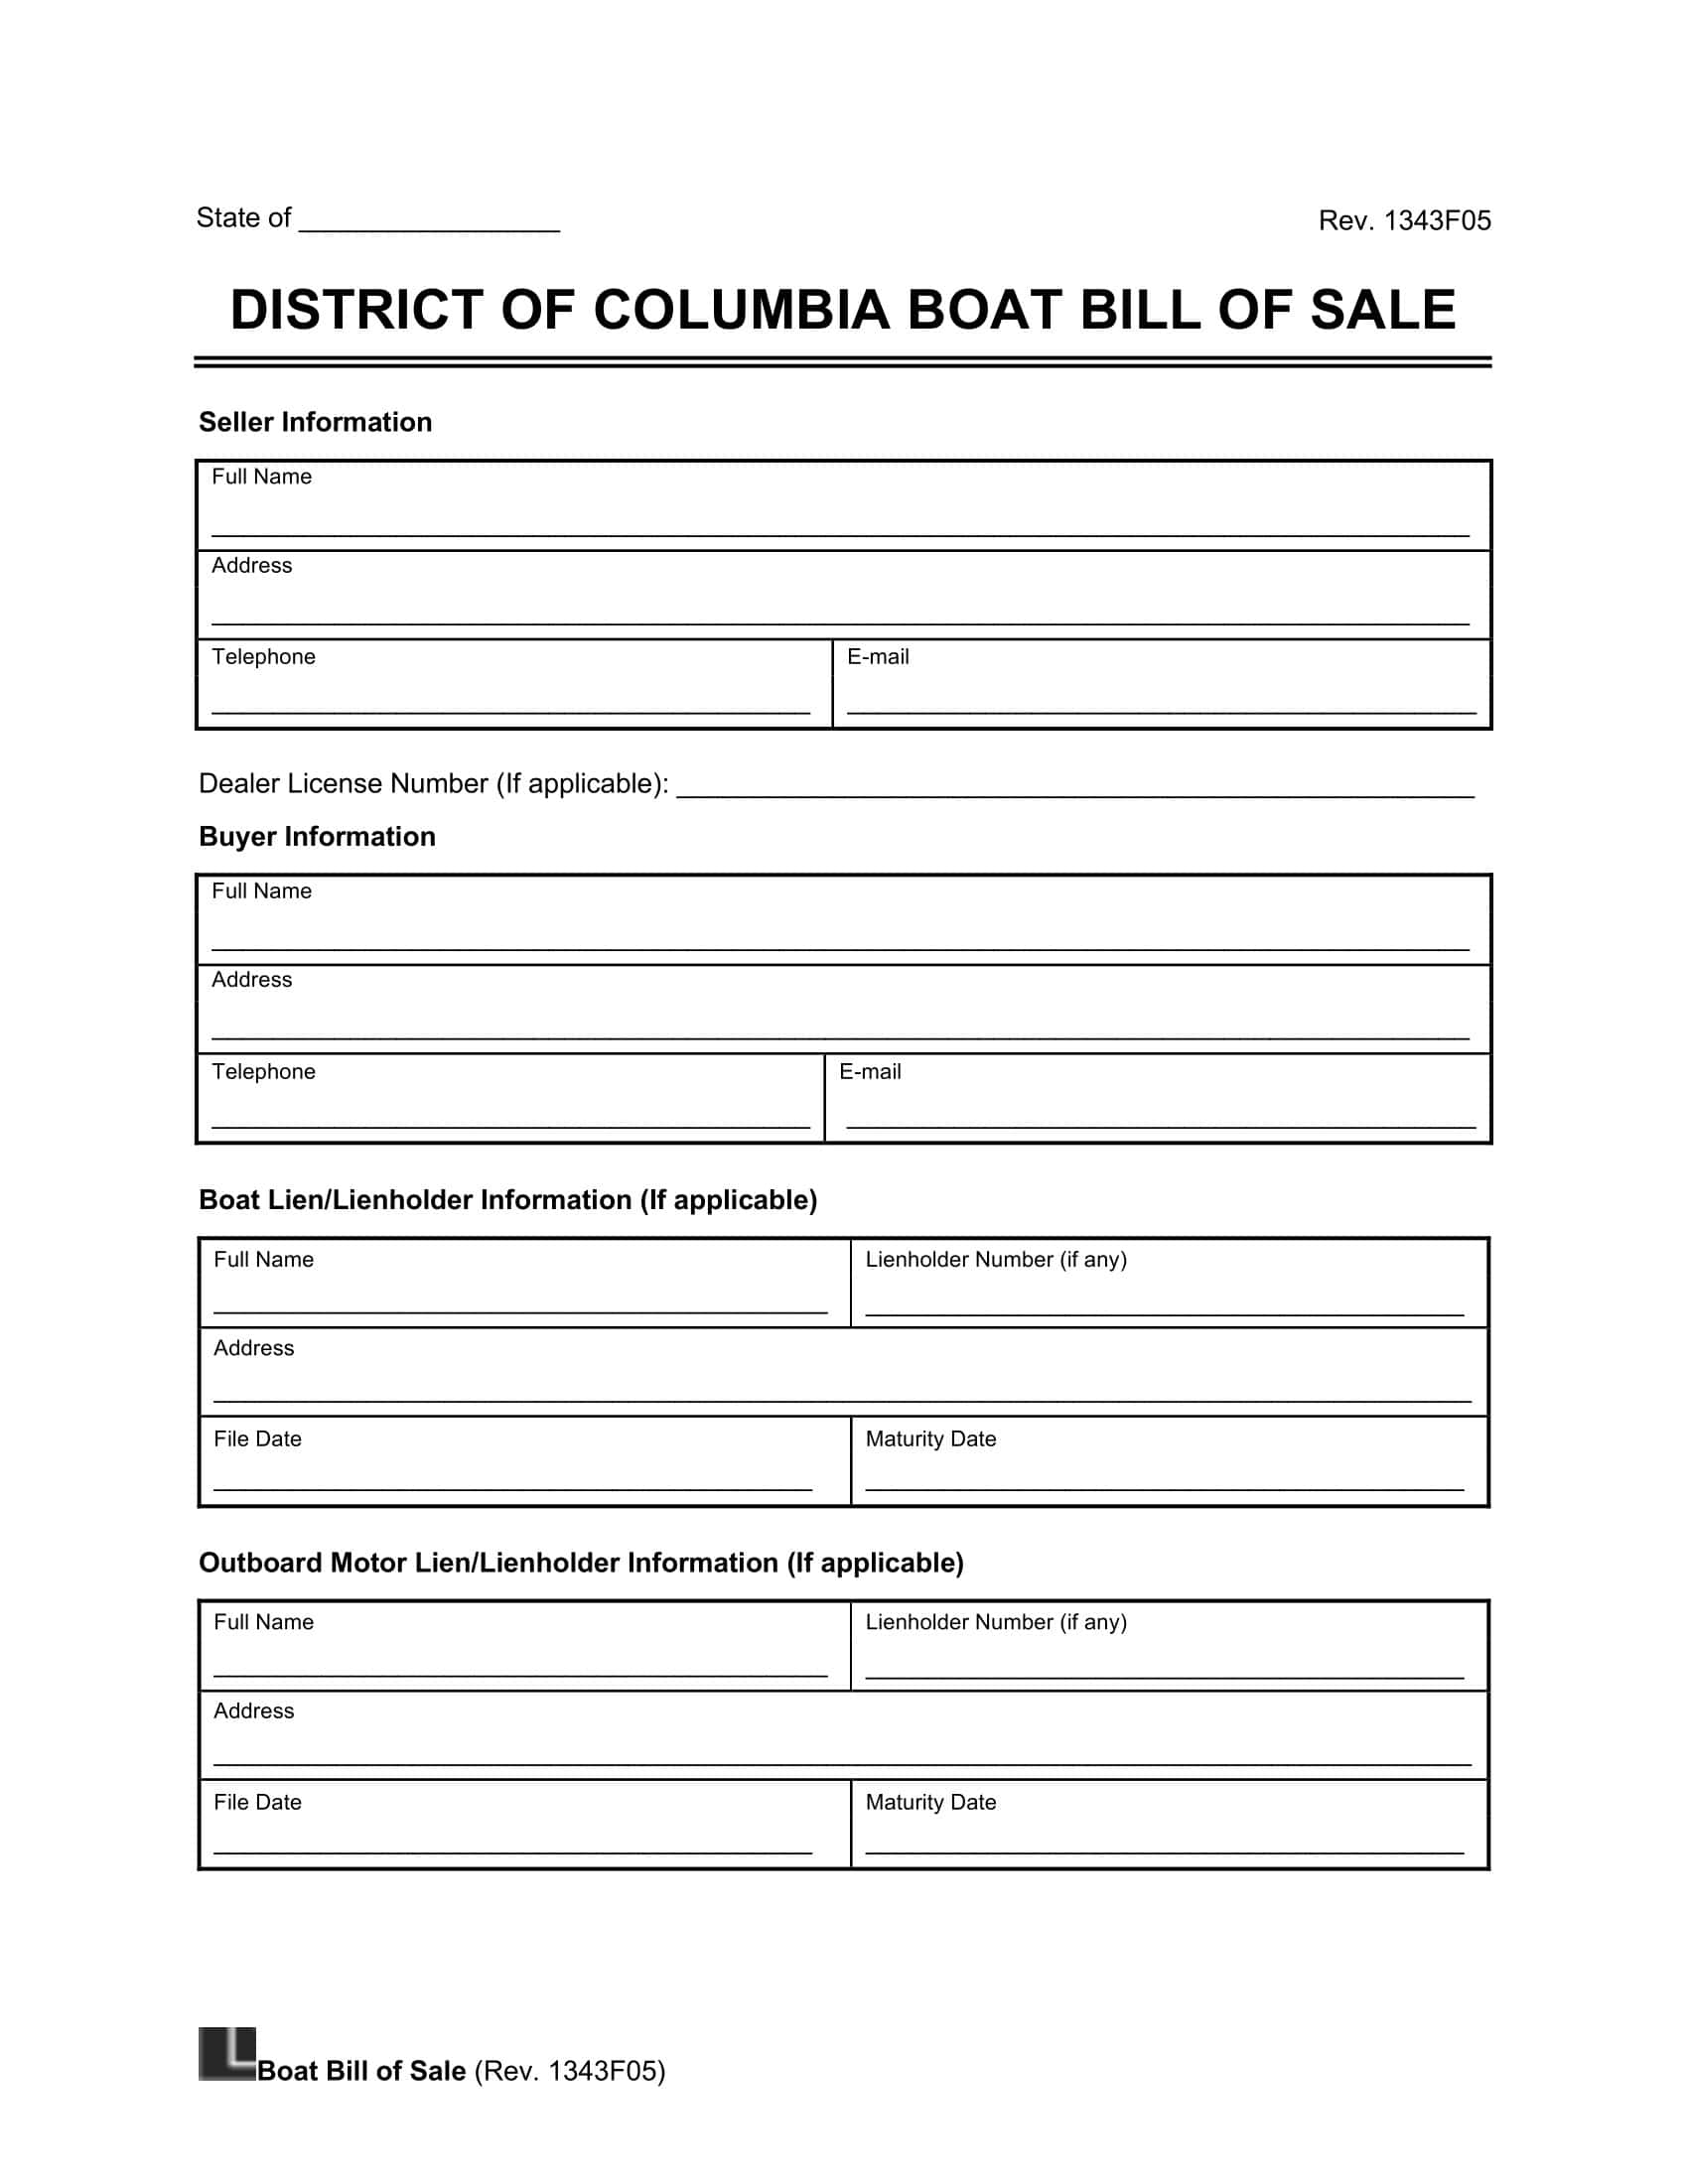 Washington, DC boat bill of sale screenshot